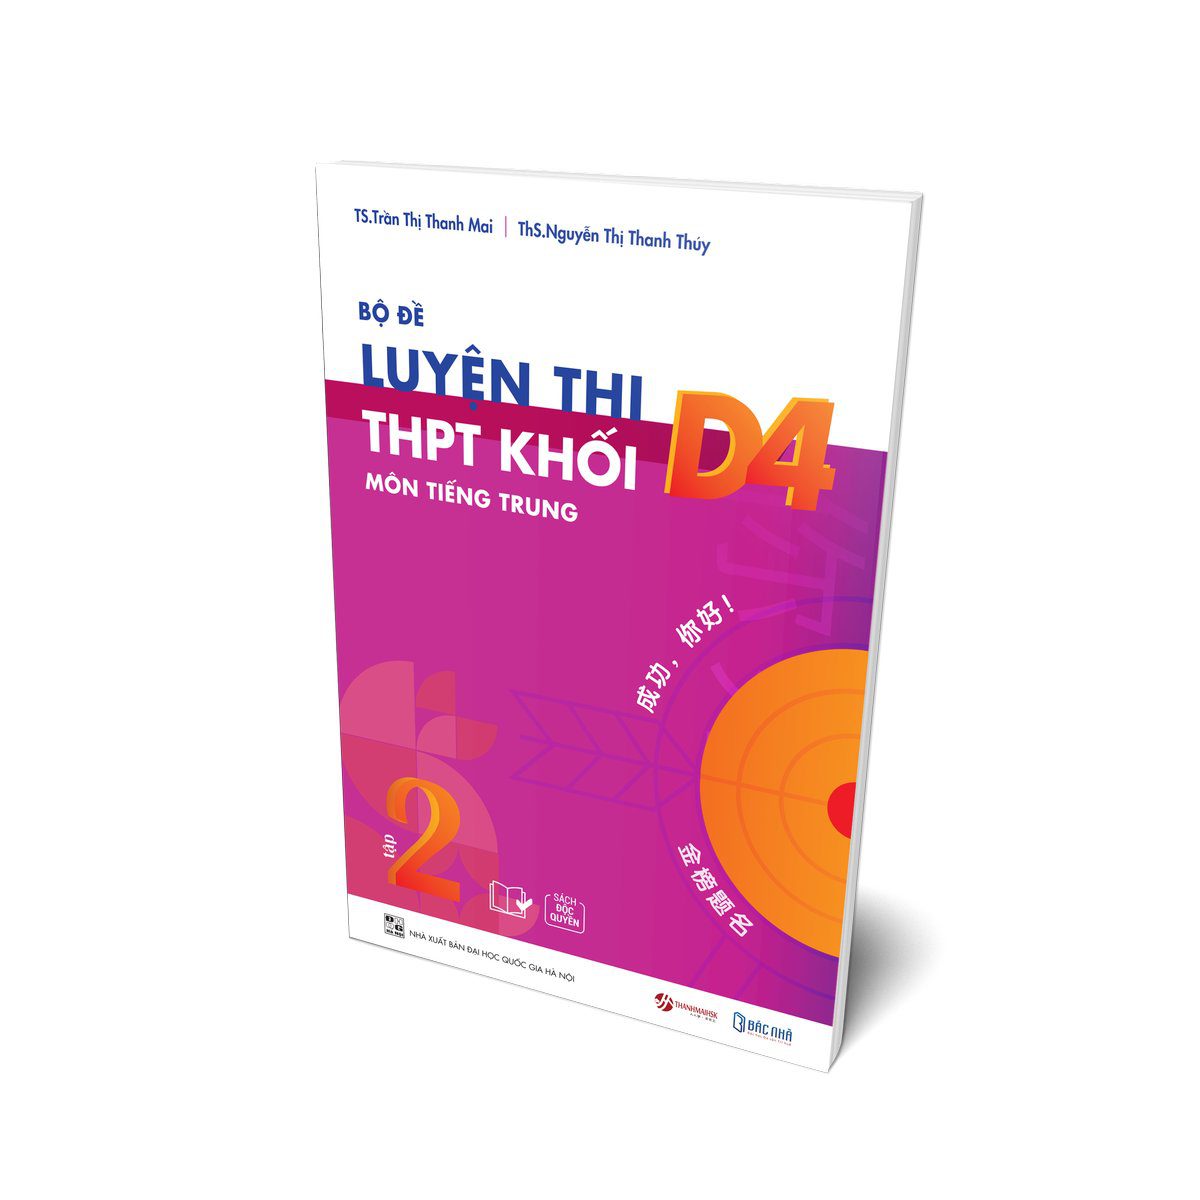 Sách bộ đề luyện thi THPT khối D4 môn tiếng Trung tập 2